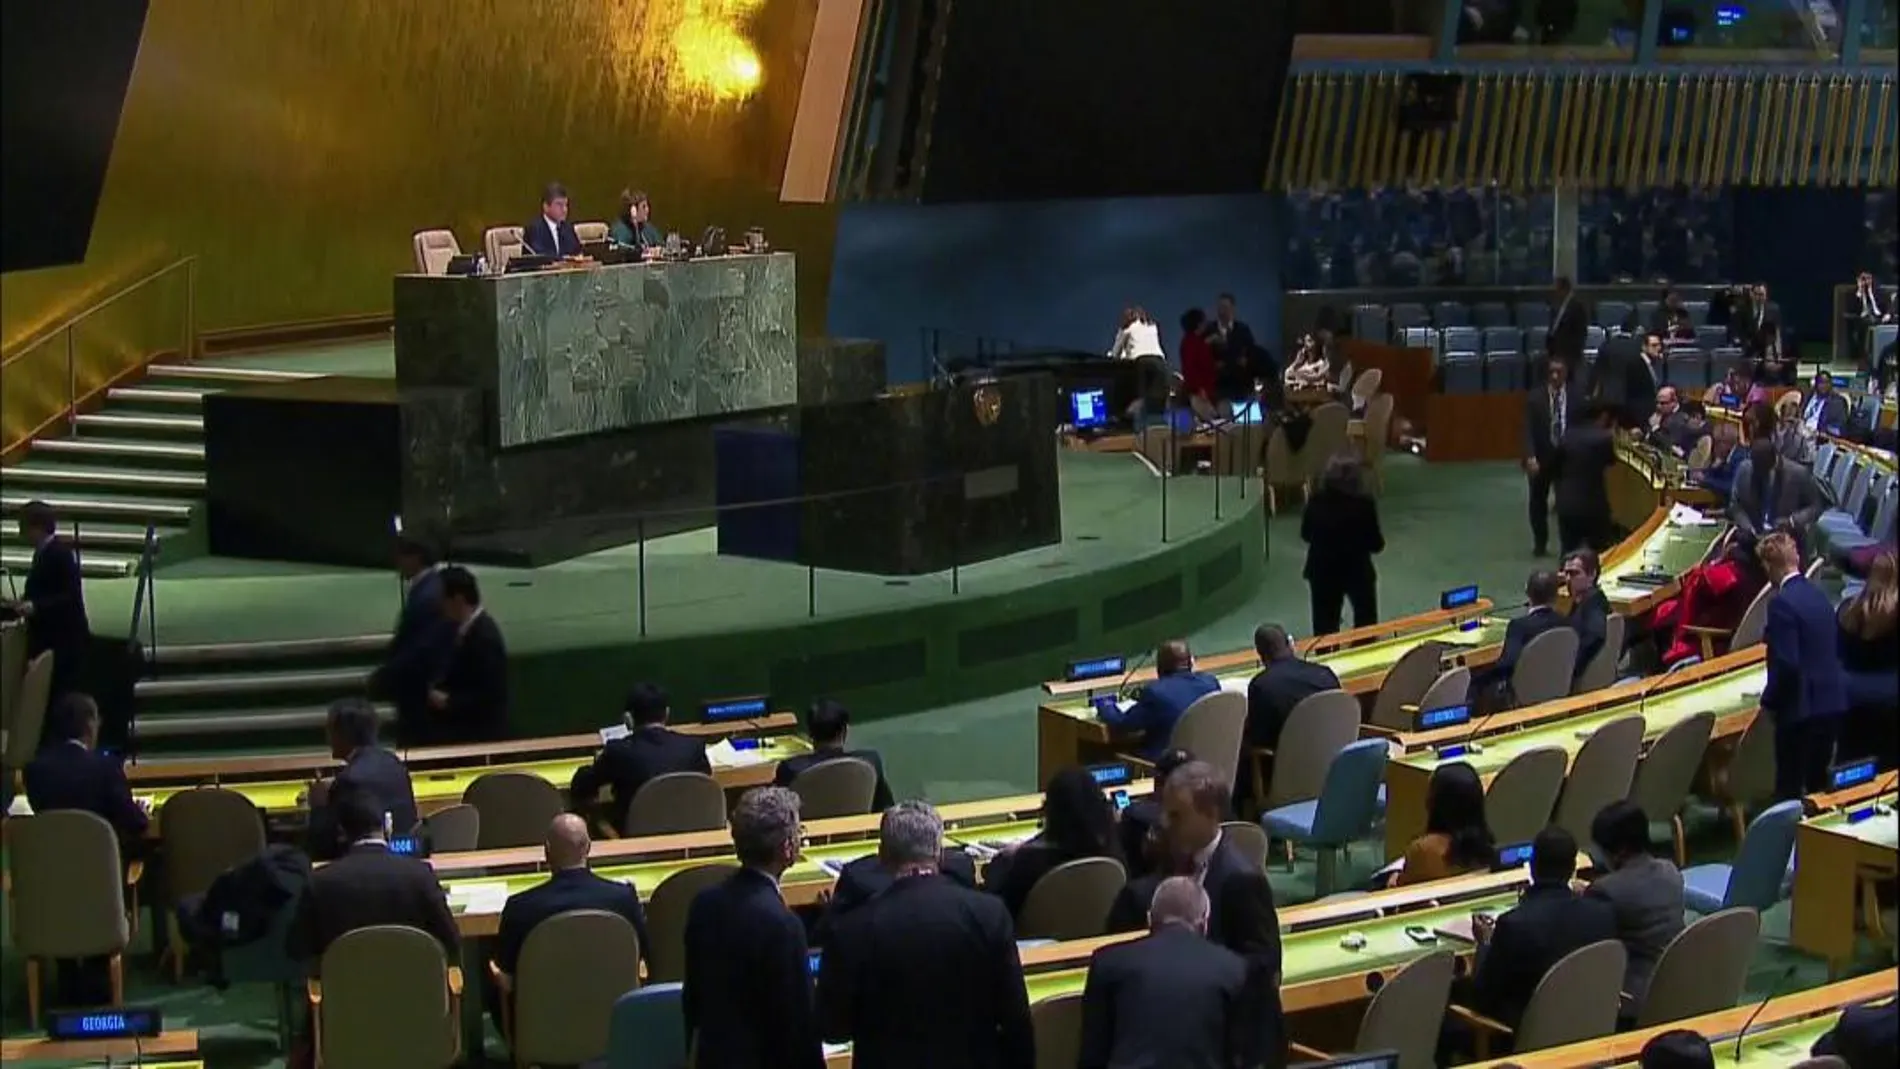 Imagen de la sesión plenaria de las Naciones Unidas celebrada hoy